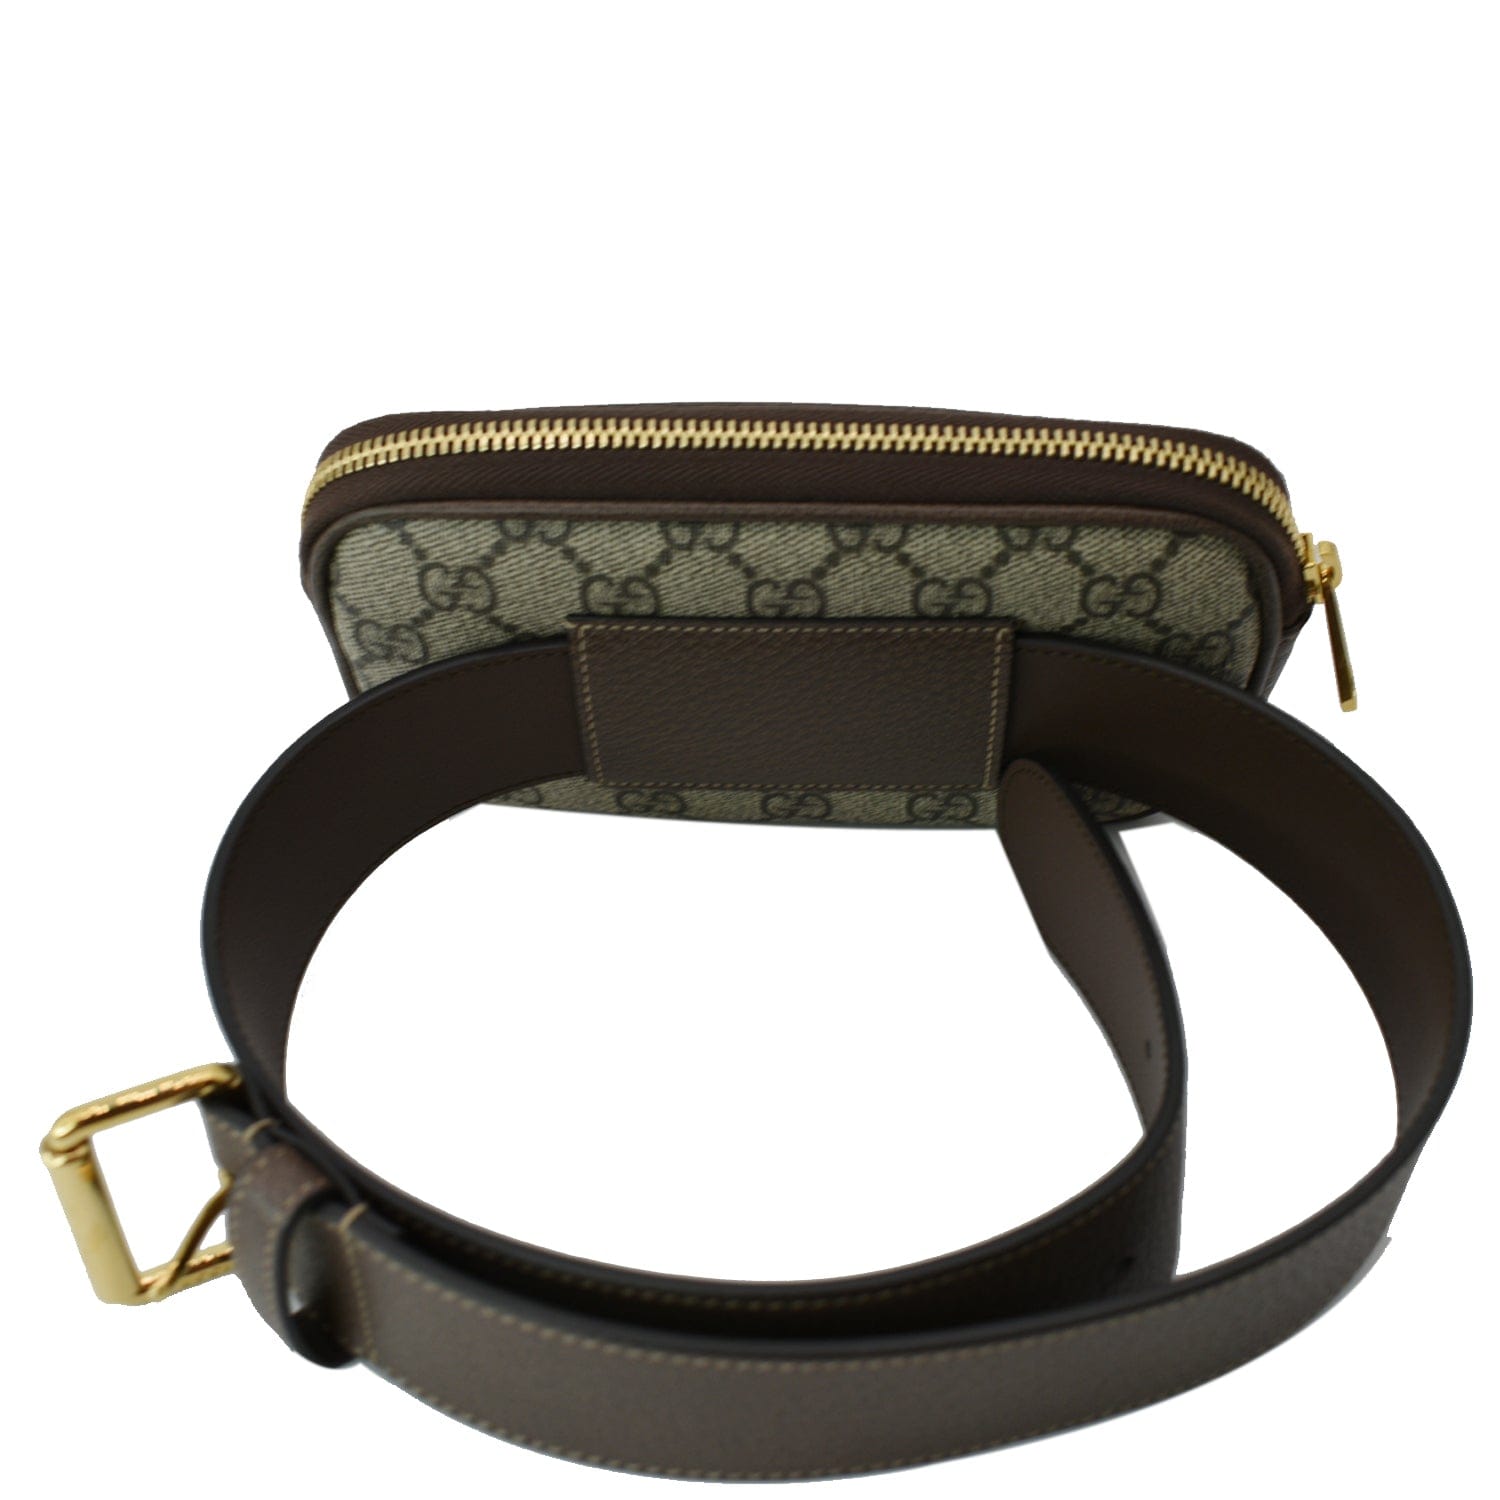 519308 GG Supreme Ophidia Small Belt Bag Size 95/38 – Keeks Designer  Handbags